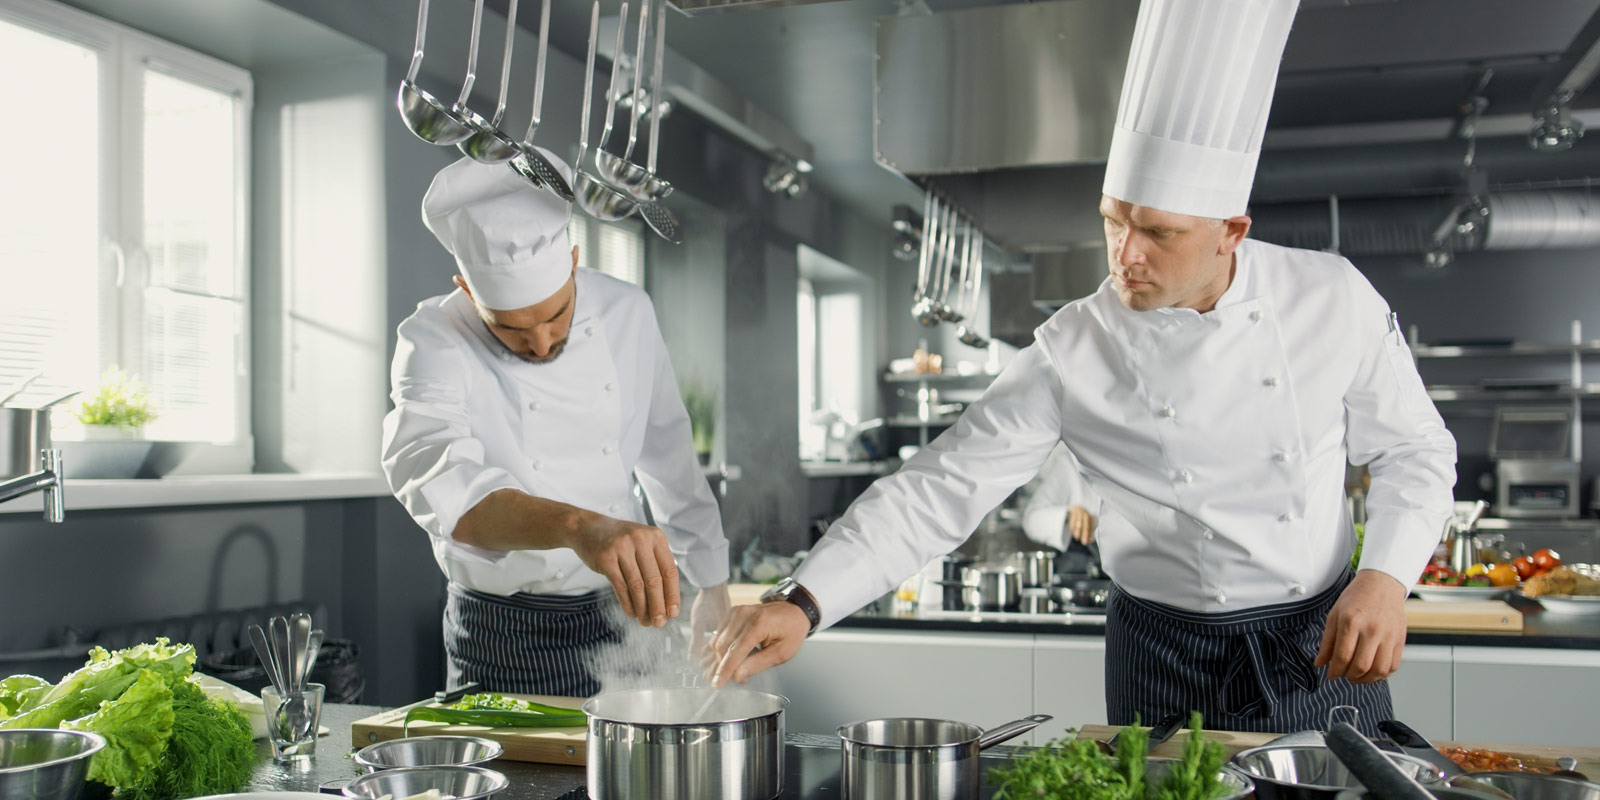 due chef preparano il pranzo in una cucina con ventilazione Menerga